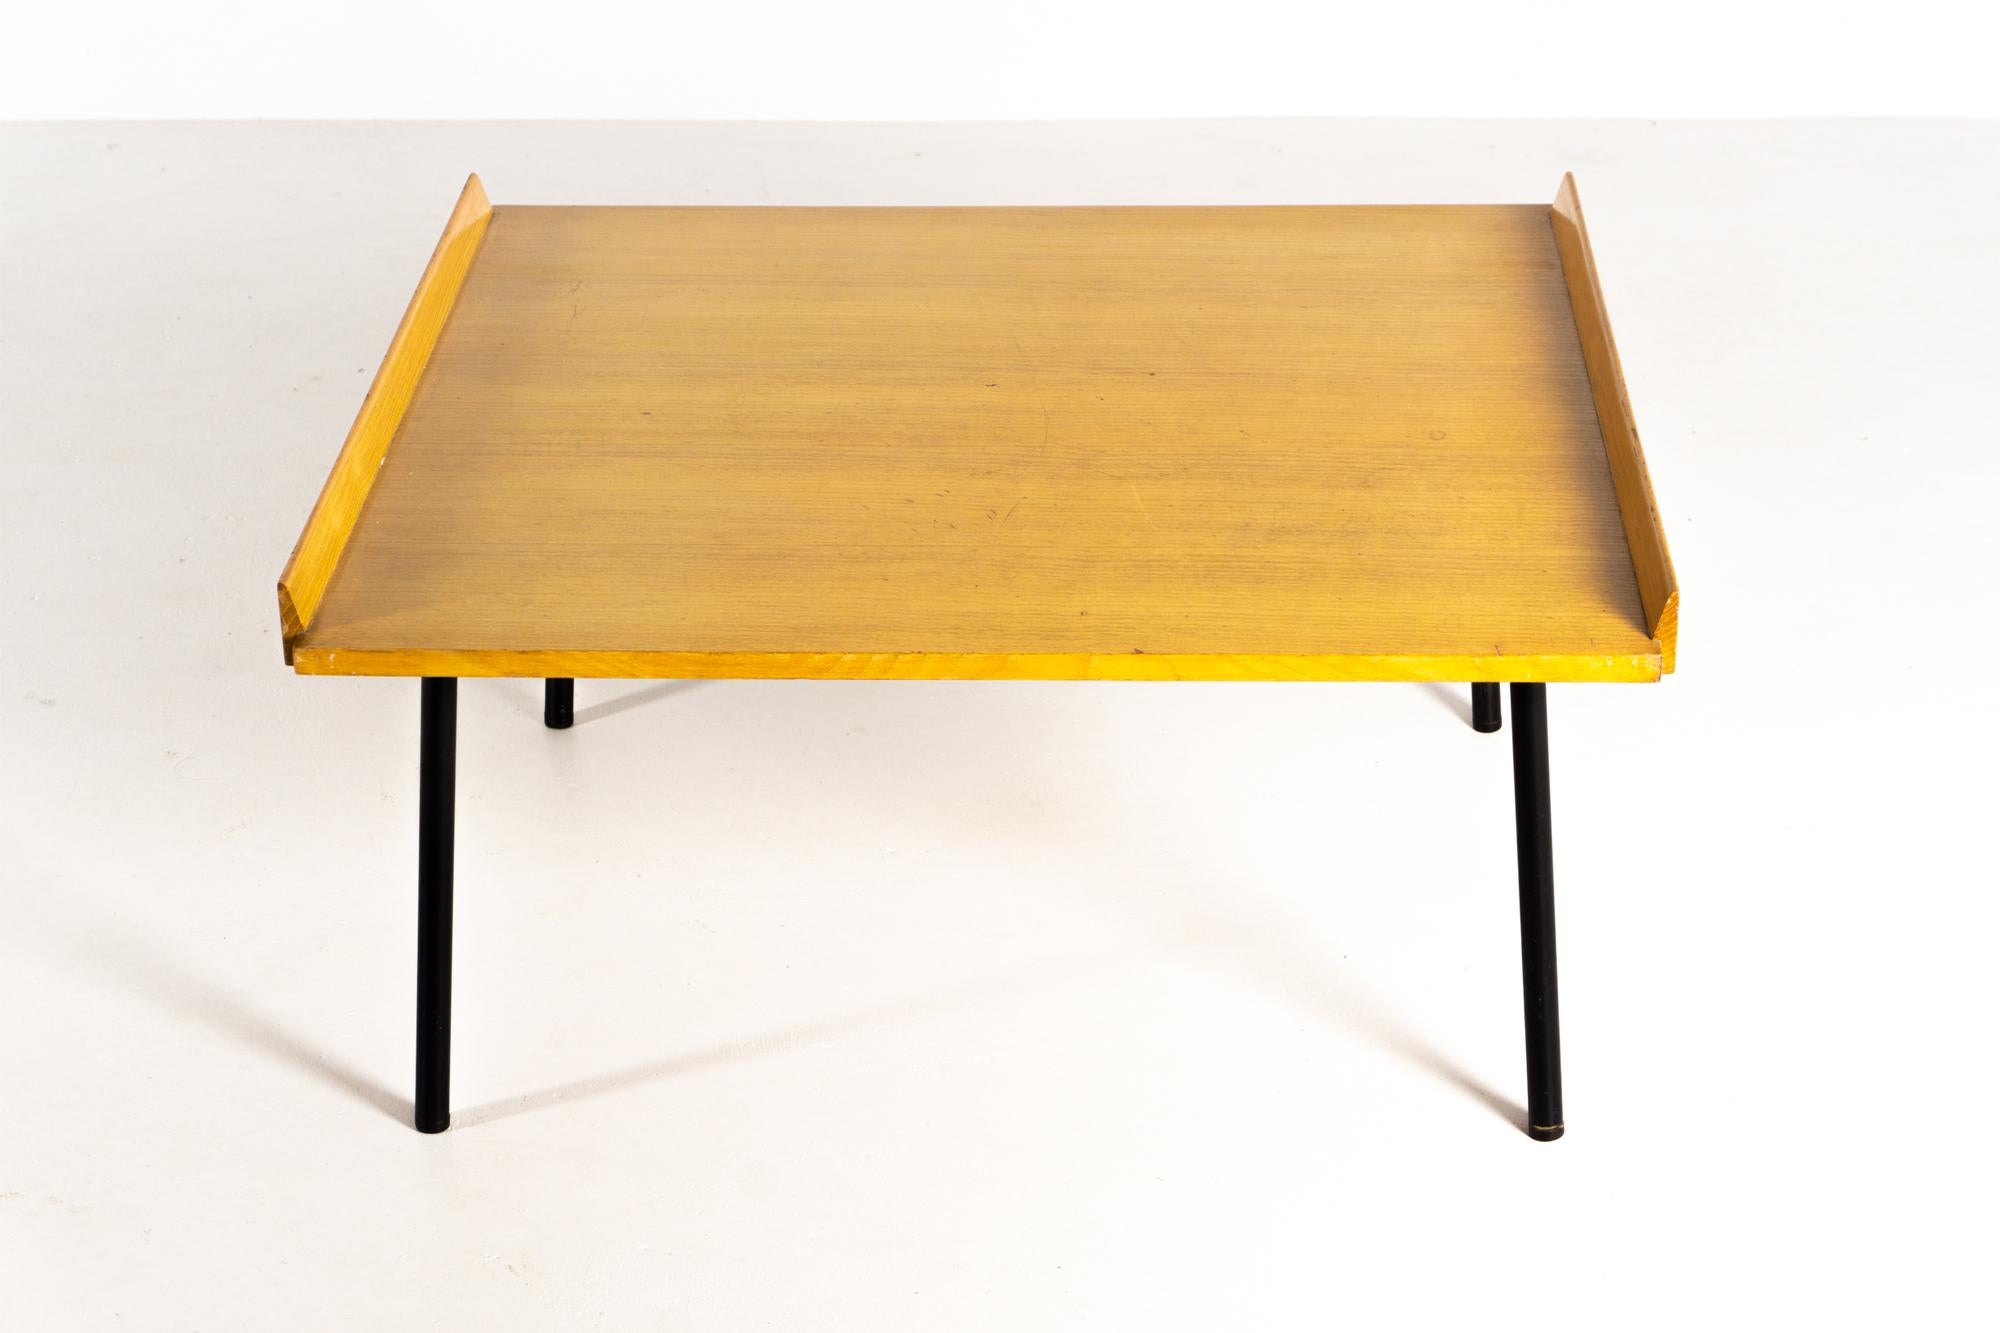 Table d'appoint / Table basse ISA Bergamo avec plateau carré. Structure en bois clair plaqué et encadré, pieds en métal laqué noir.

Le fabricant de meubles italien I.S.A. (Industria Salotti e Arredamenti), également connu sous le nom d'ISA, ISA